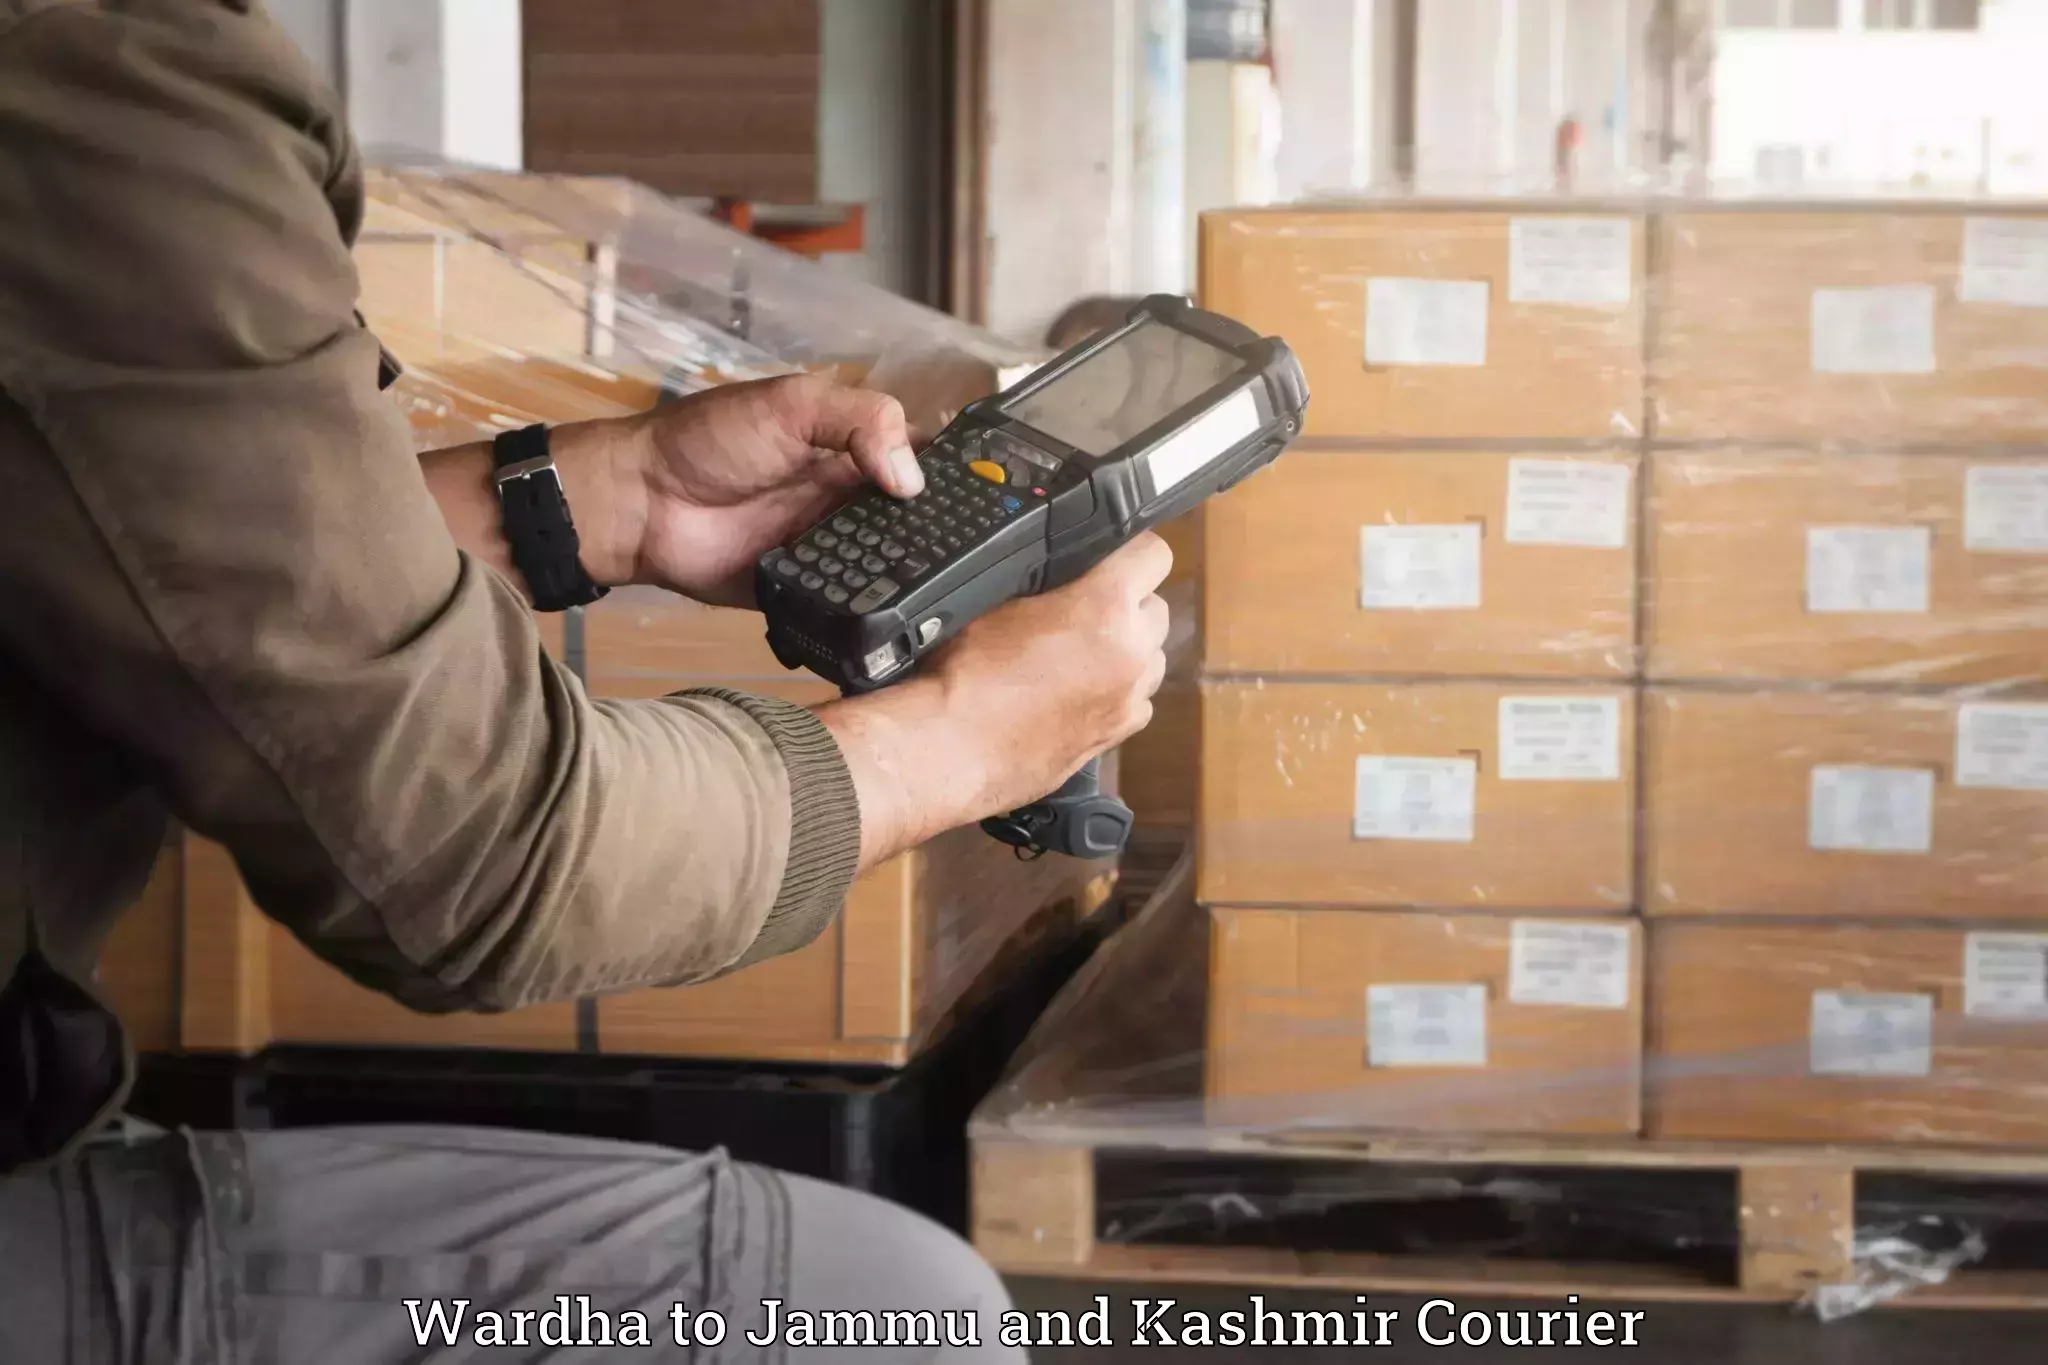 Scheduled baggage courier Wardha to Srinagar Kashmir